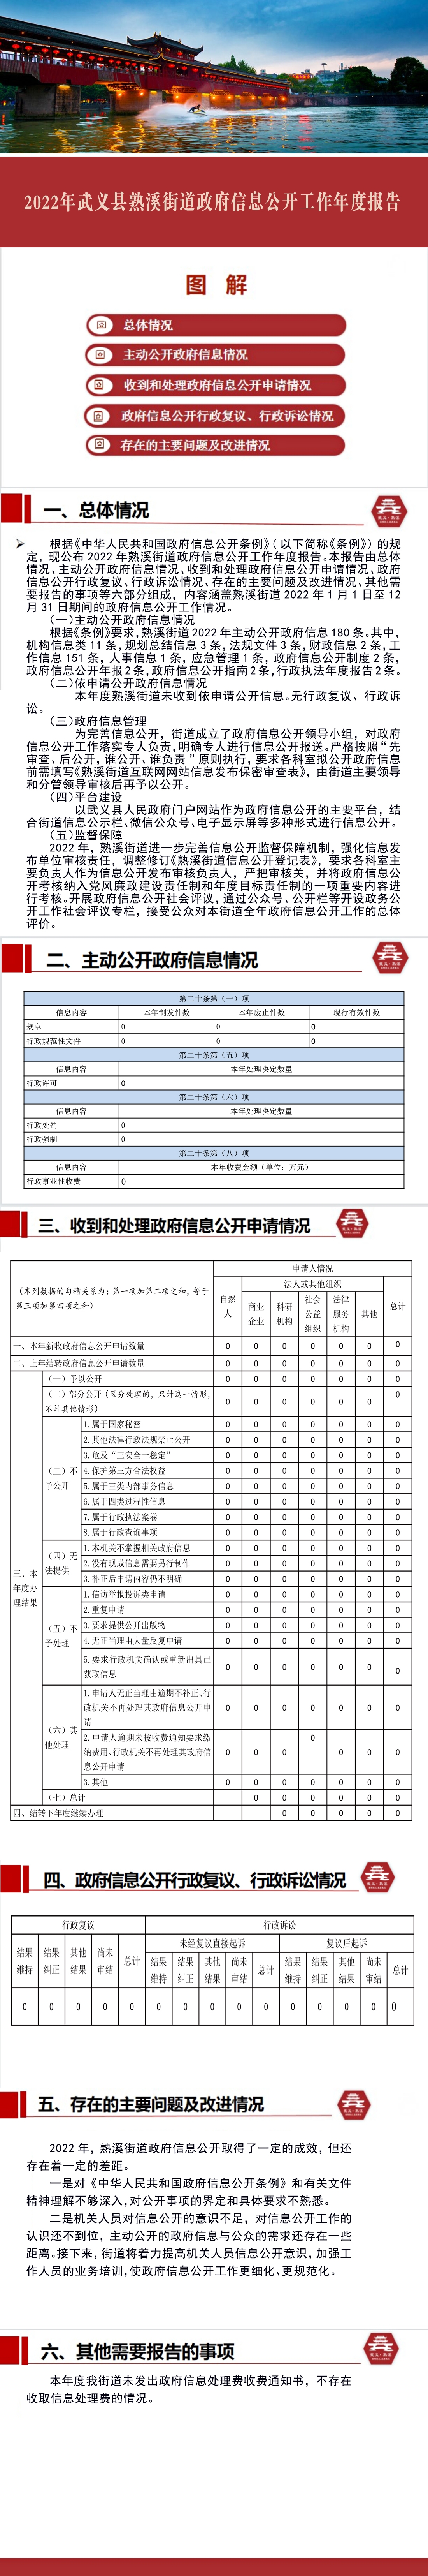 2022年武义县熟溪街道政府信息公开工作年度报告.jpg